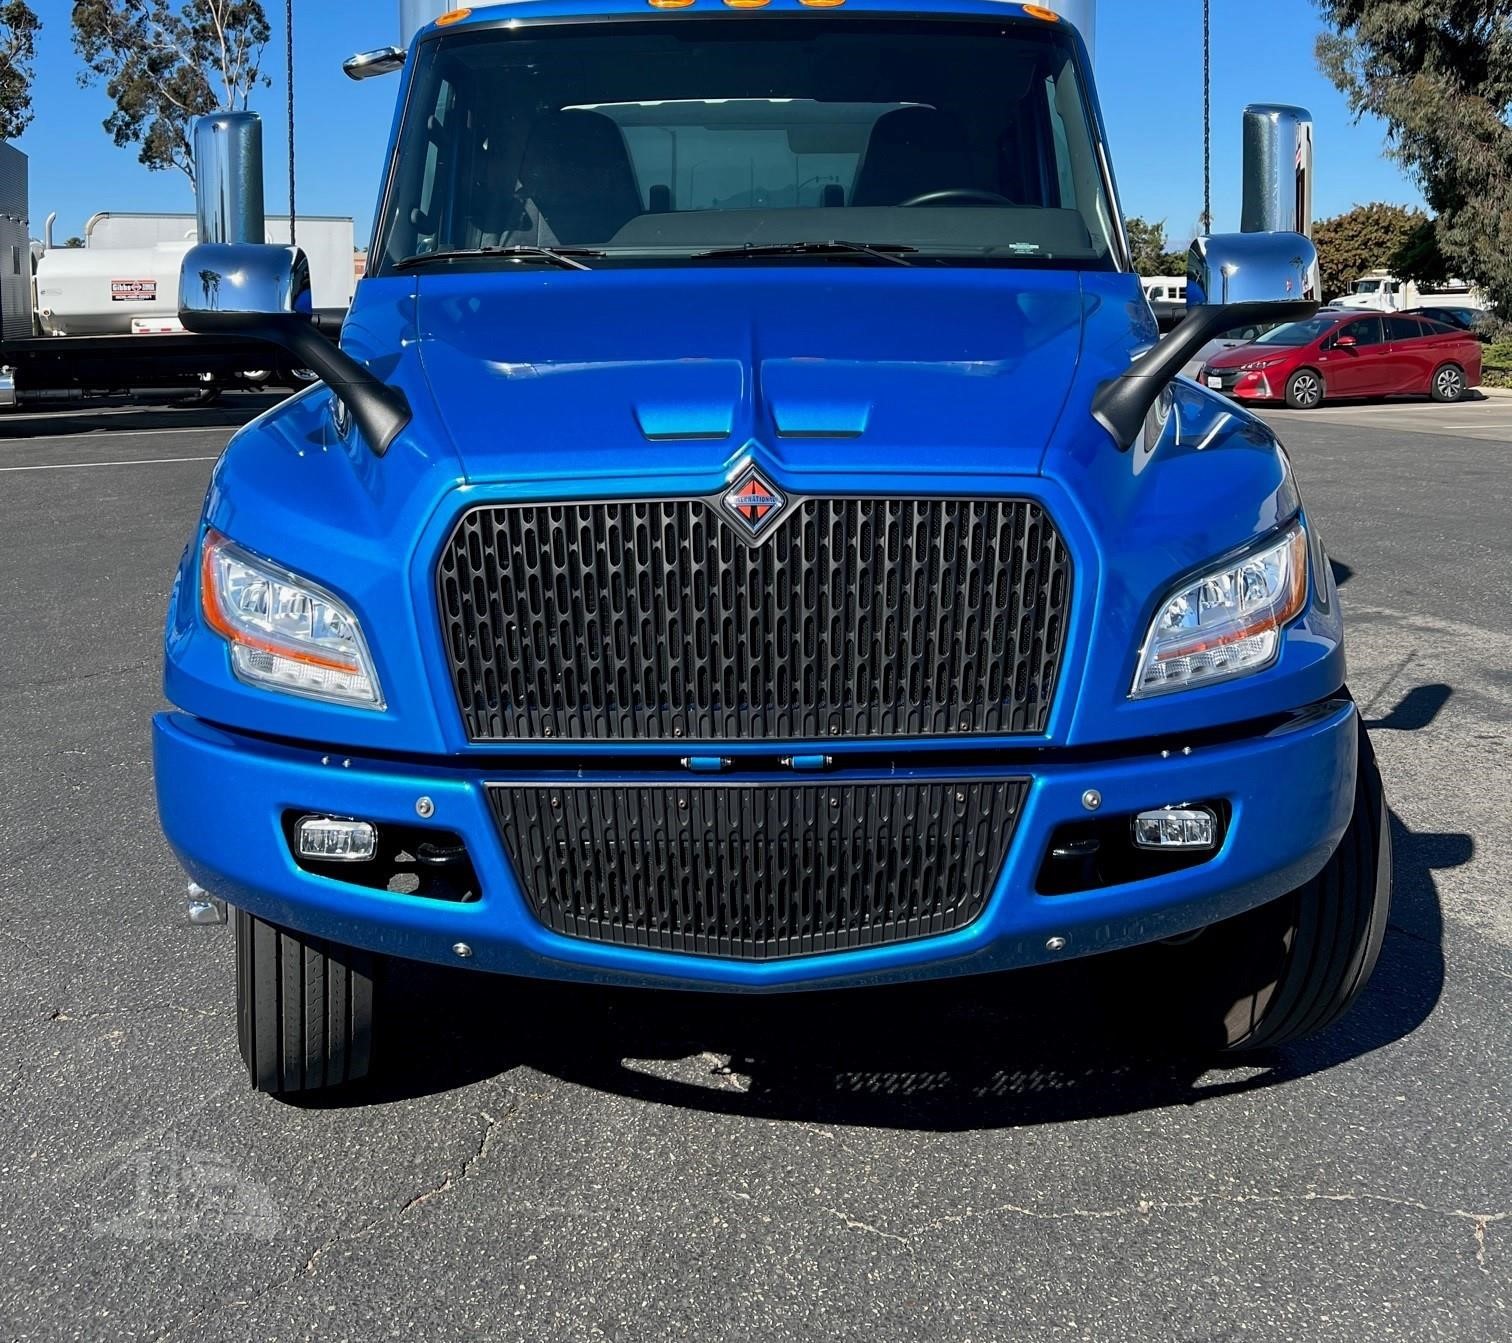 2023 INTERNATIONAL EMV For Sale In Fresno, California | TruckPaper.com